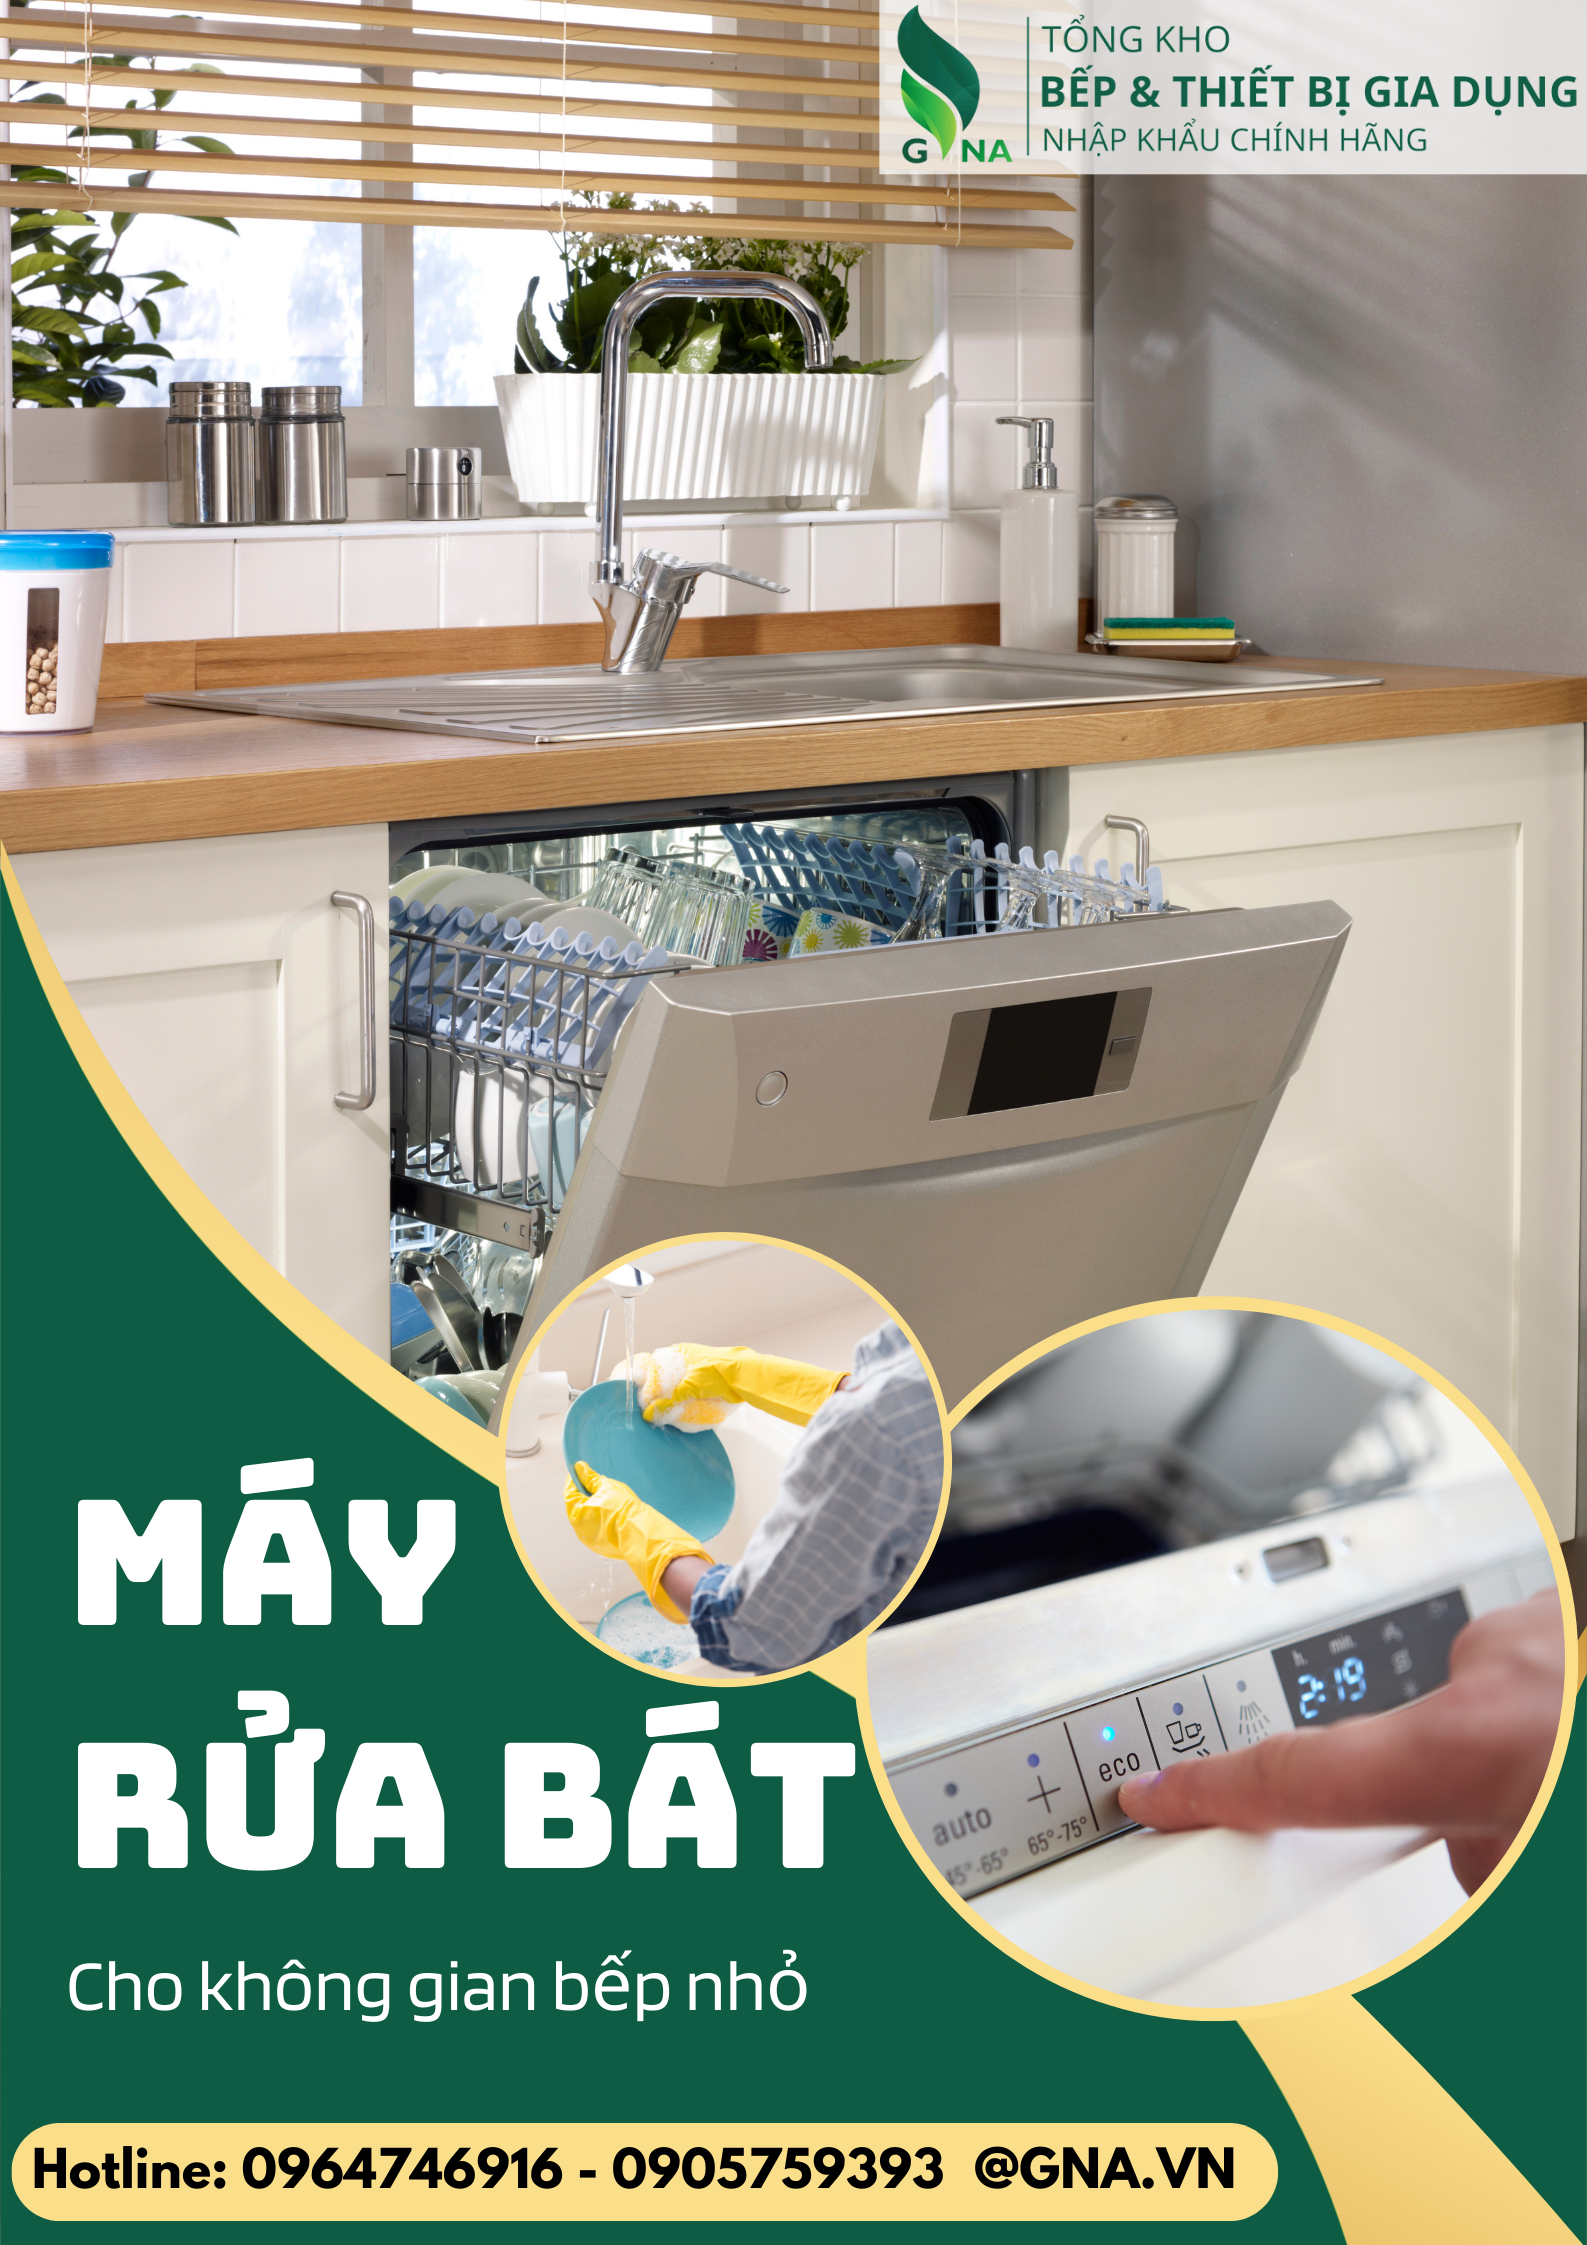 Máy rửa bát nào phù hợp cho bếp nhỏ mà lại đầy đủ mọi tính năng cần thiết với chi phí hợp lí nhất?